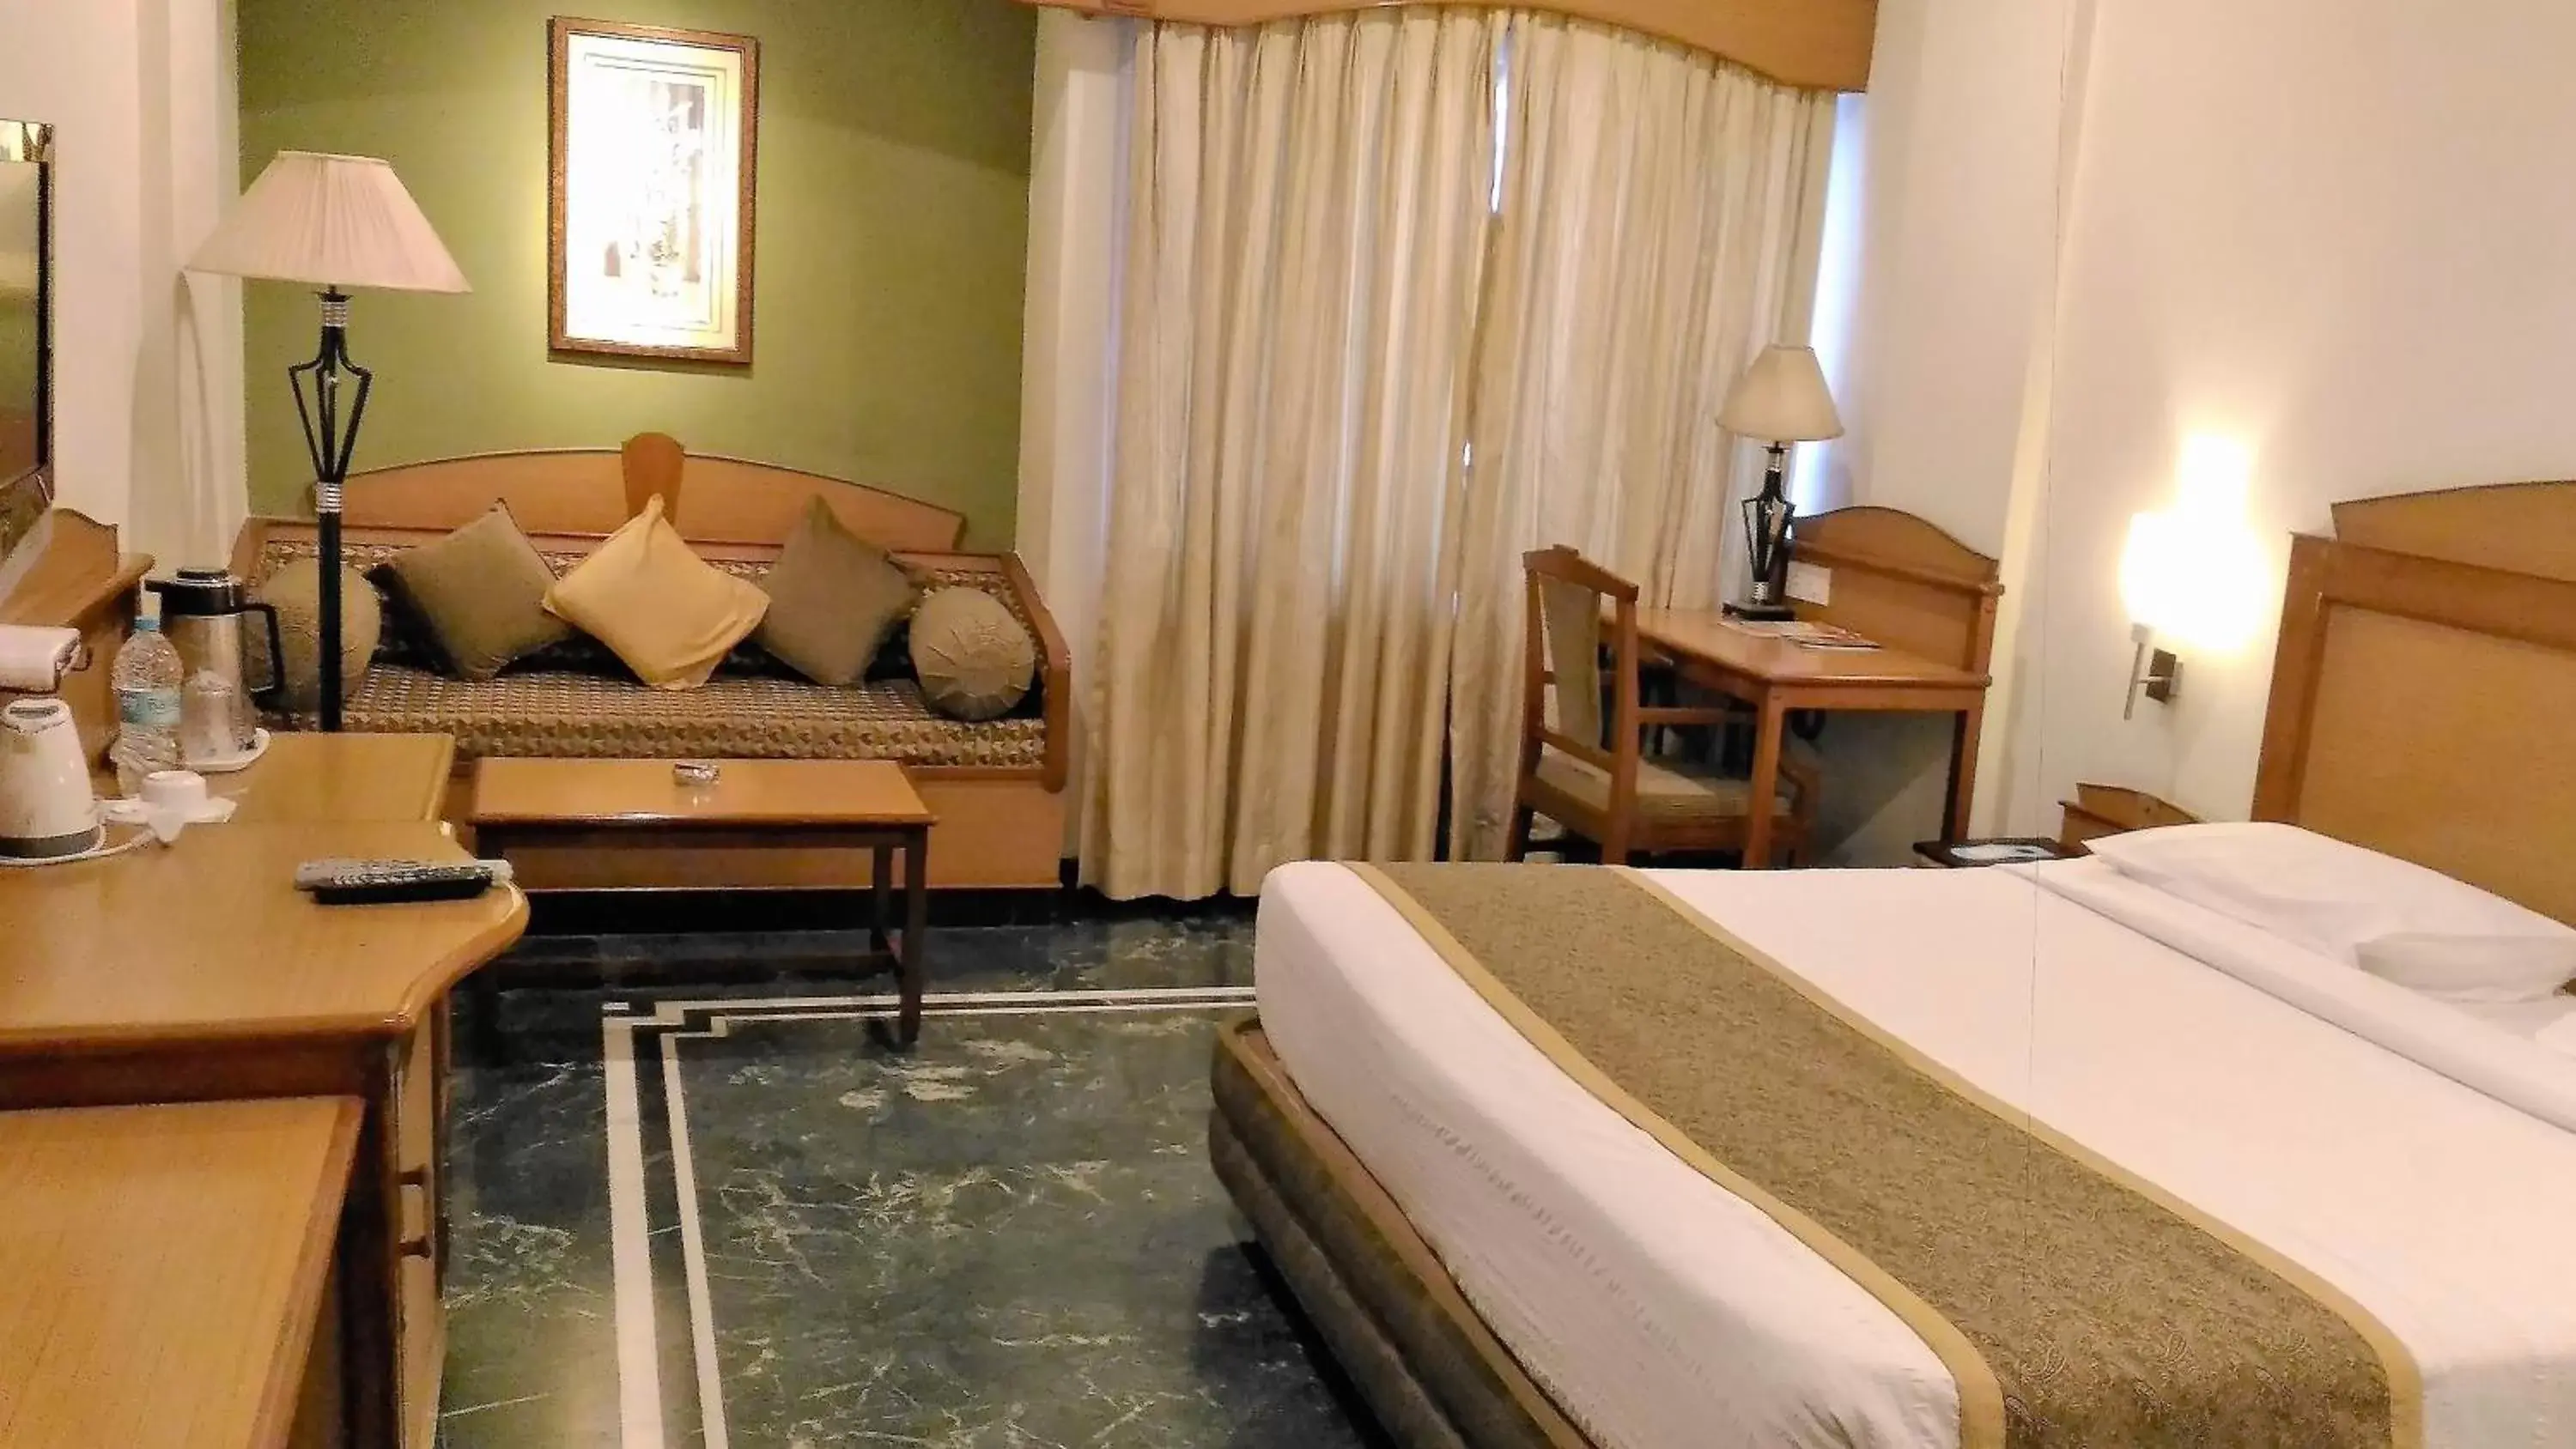 Bed, Room Photo in Taj Tristar